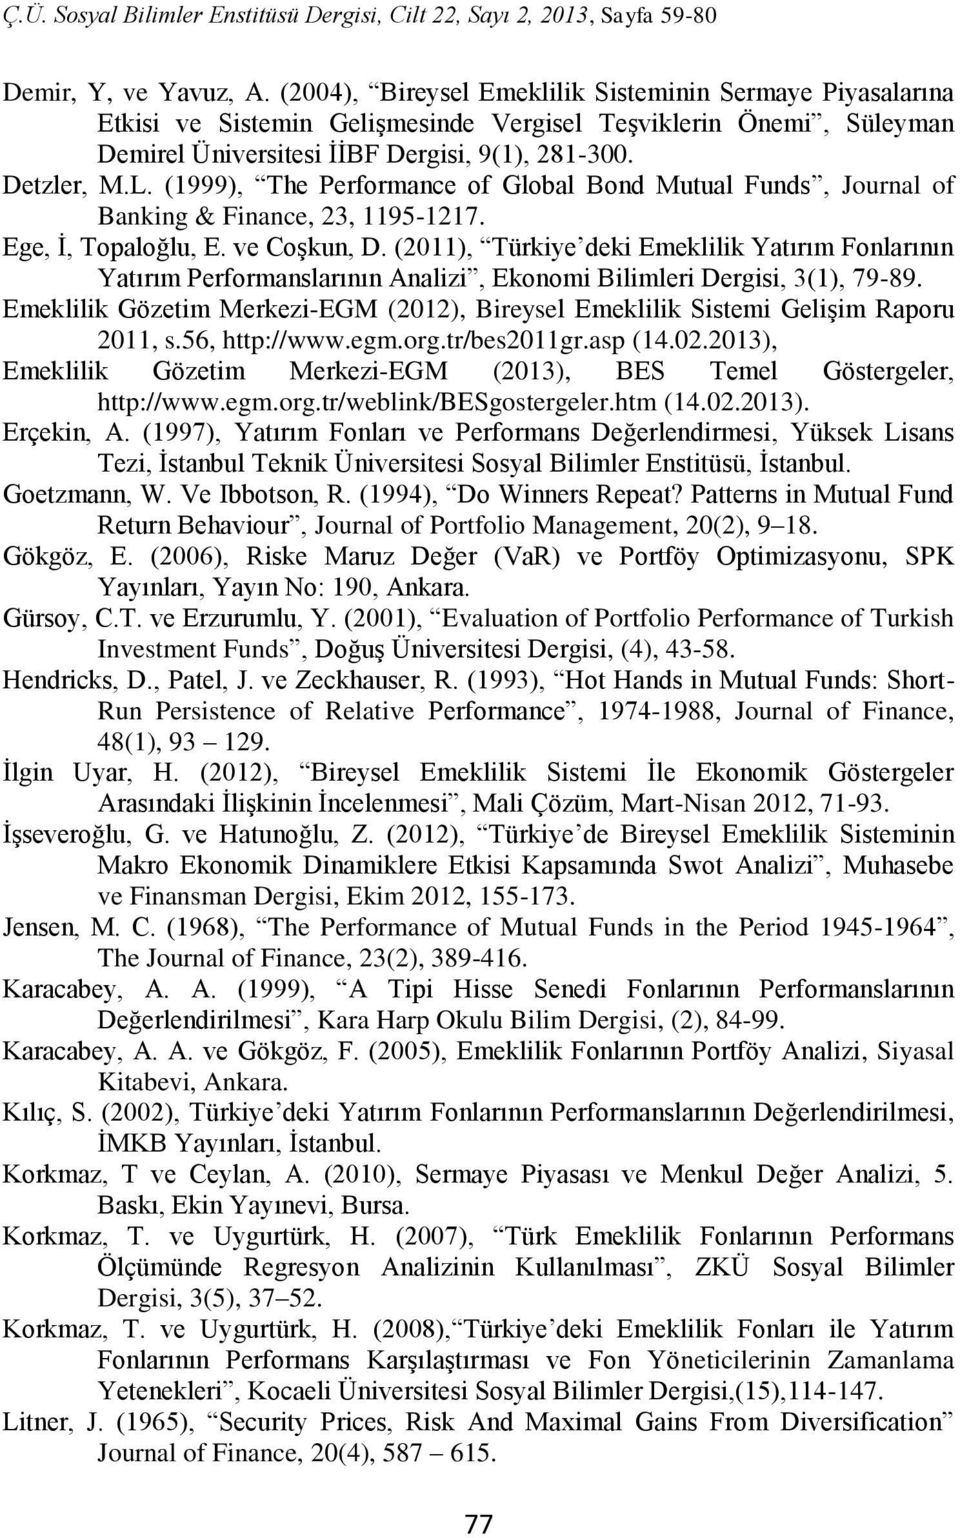 (2011), Türkiye deki Emeklilik Yatırım Fonlarının Yatırım Performanslarının Analizi, Ekonomi Bilimleri Dergisi, 3(1), 79-89.